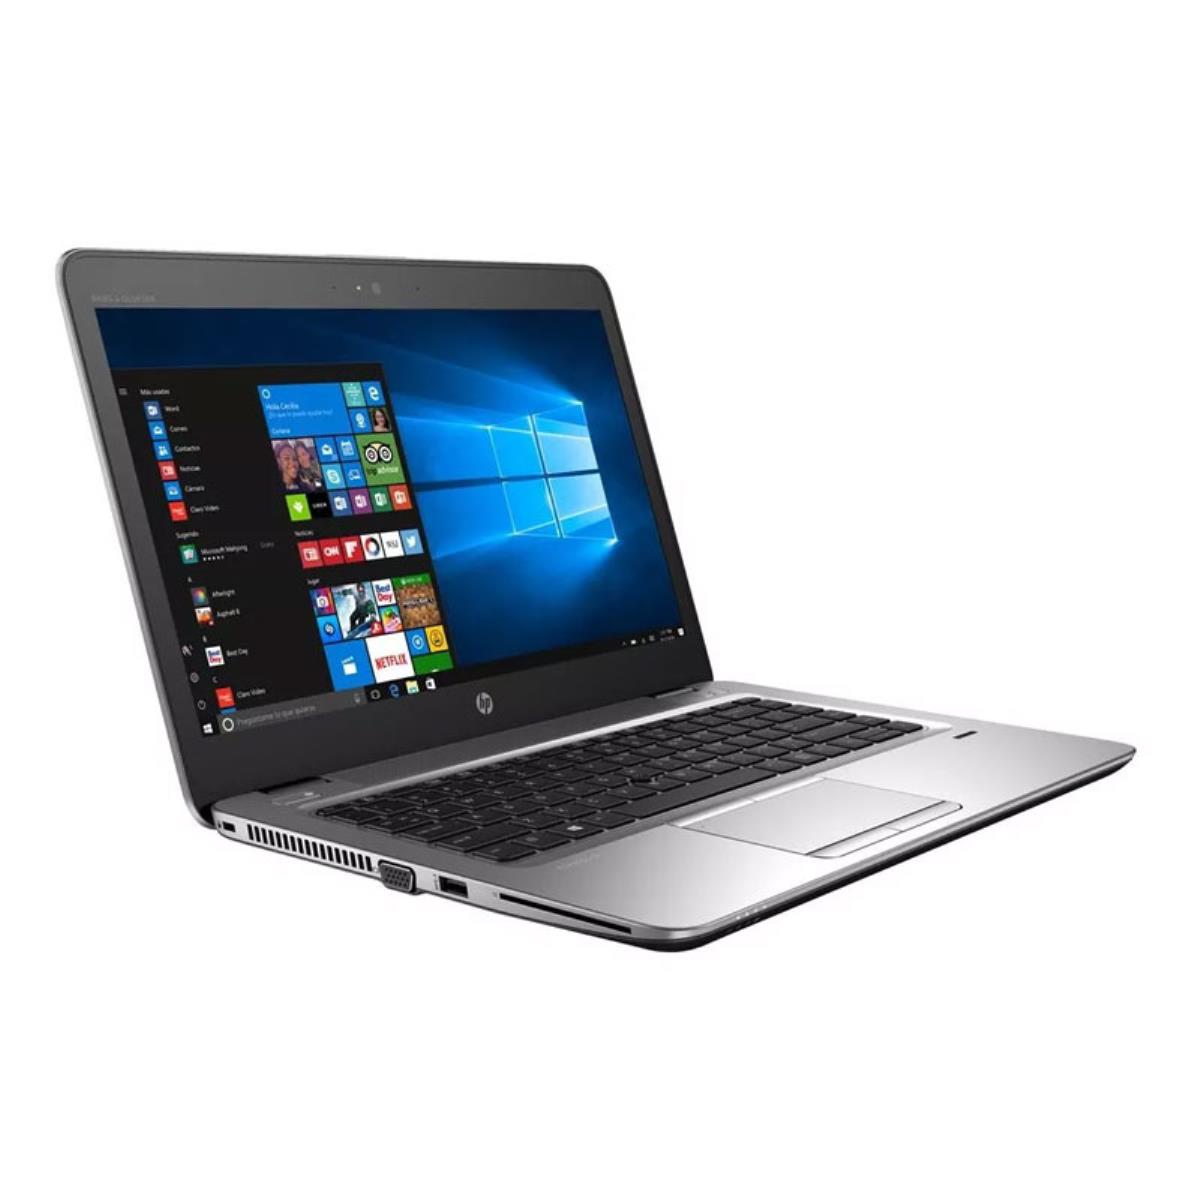 Portátil Ultrabook HP Elitebook 840 G3 GRADO A con teclado en castellano (Intel Core i5 6200U 2.3Ghz/8GB/240SSD-M.2/14HD/NO-DVD/W8P) Preinstalado